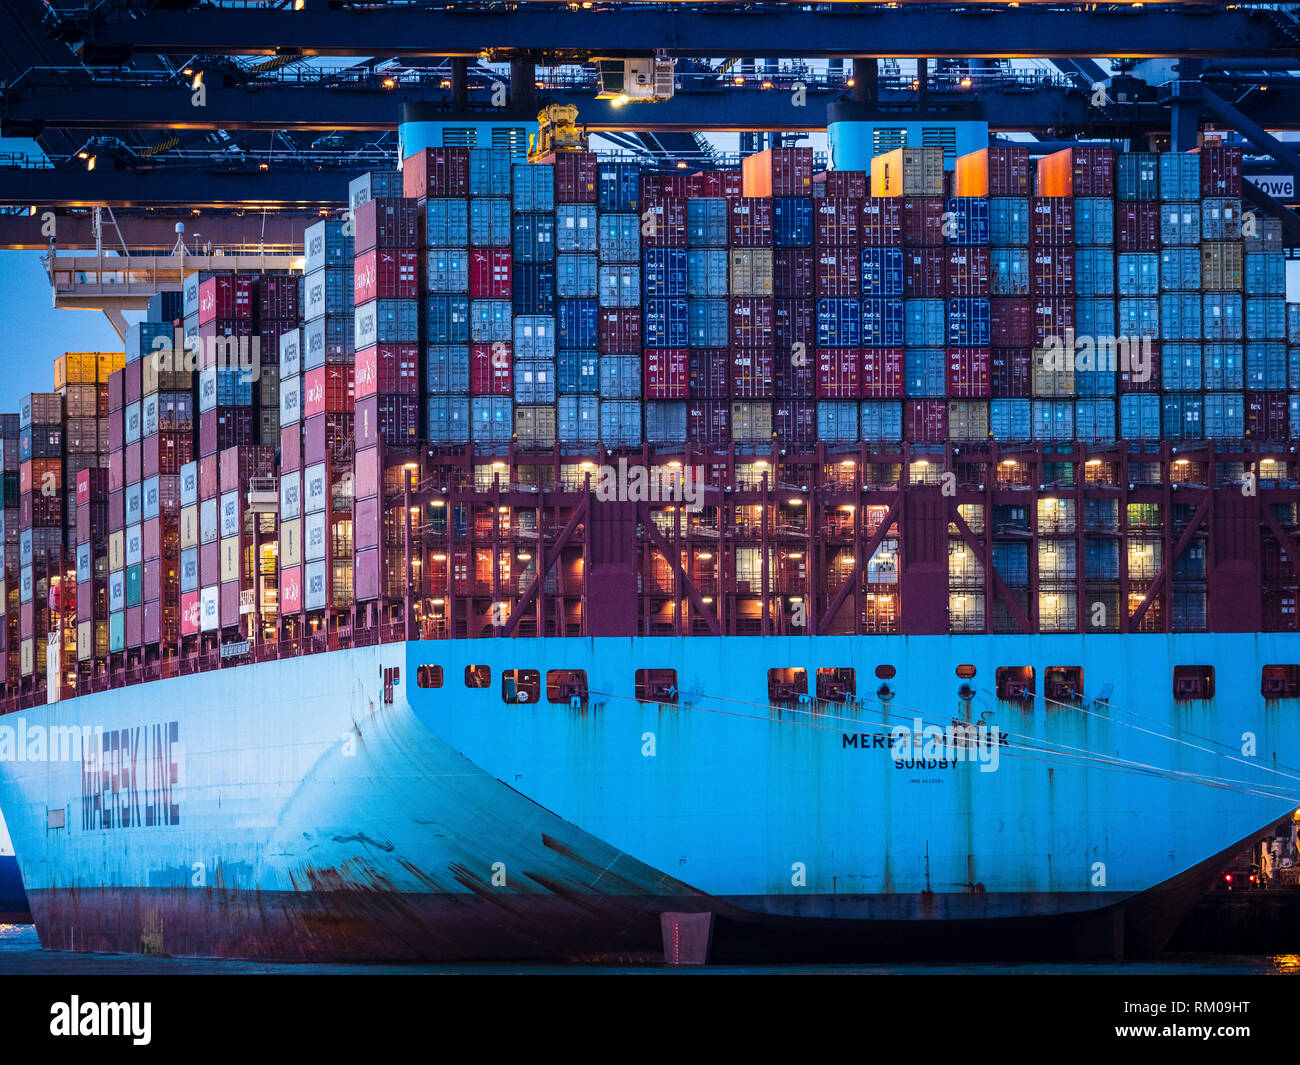 Commercio internazionale - i contenitori di spedizione vengono caricate e scaricate da una Maersk Container nave nel porto di Felixstowe UK. Foto Stock